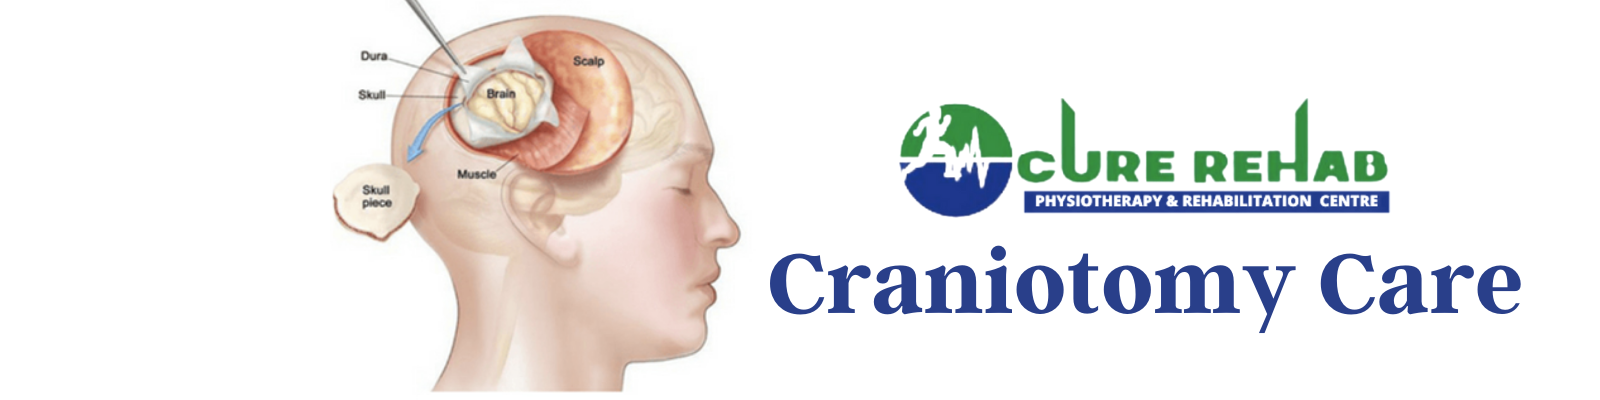 Craniotomy Care